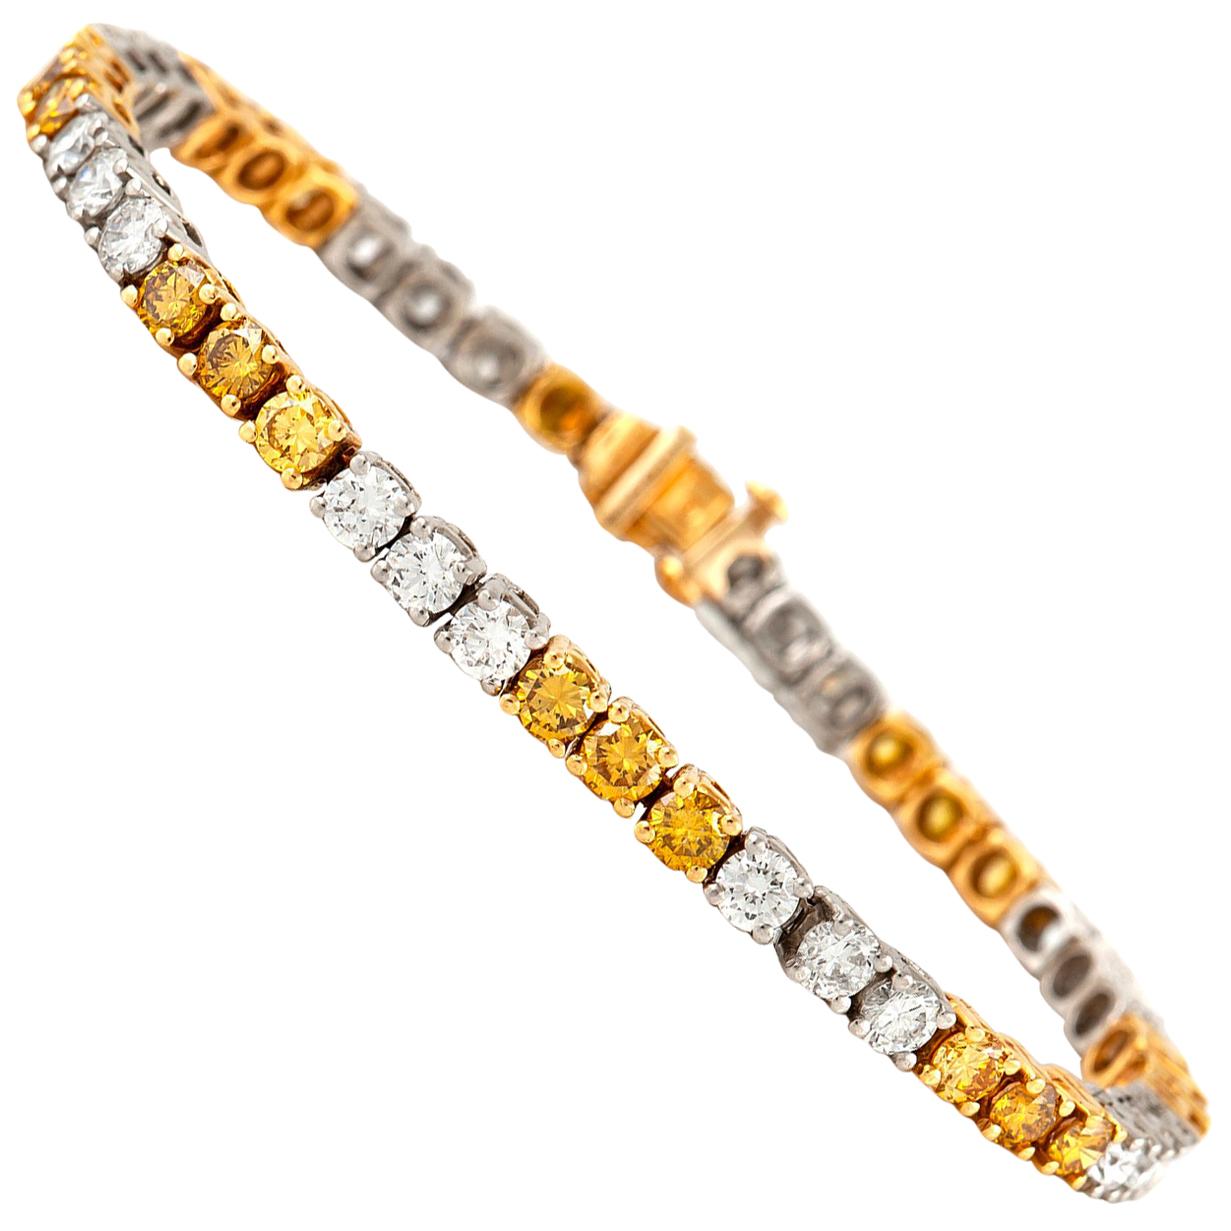 Oscar Heyman Fancy Yellow and White Diamond Bracelet